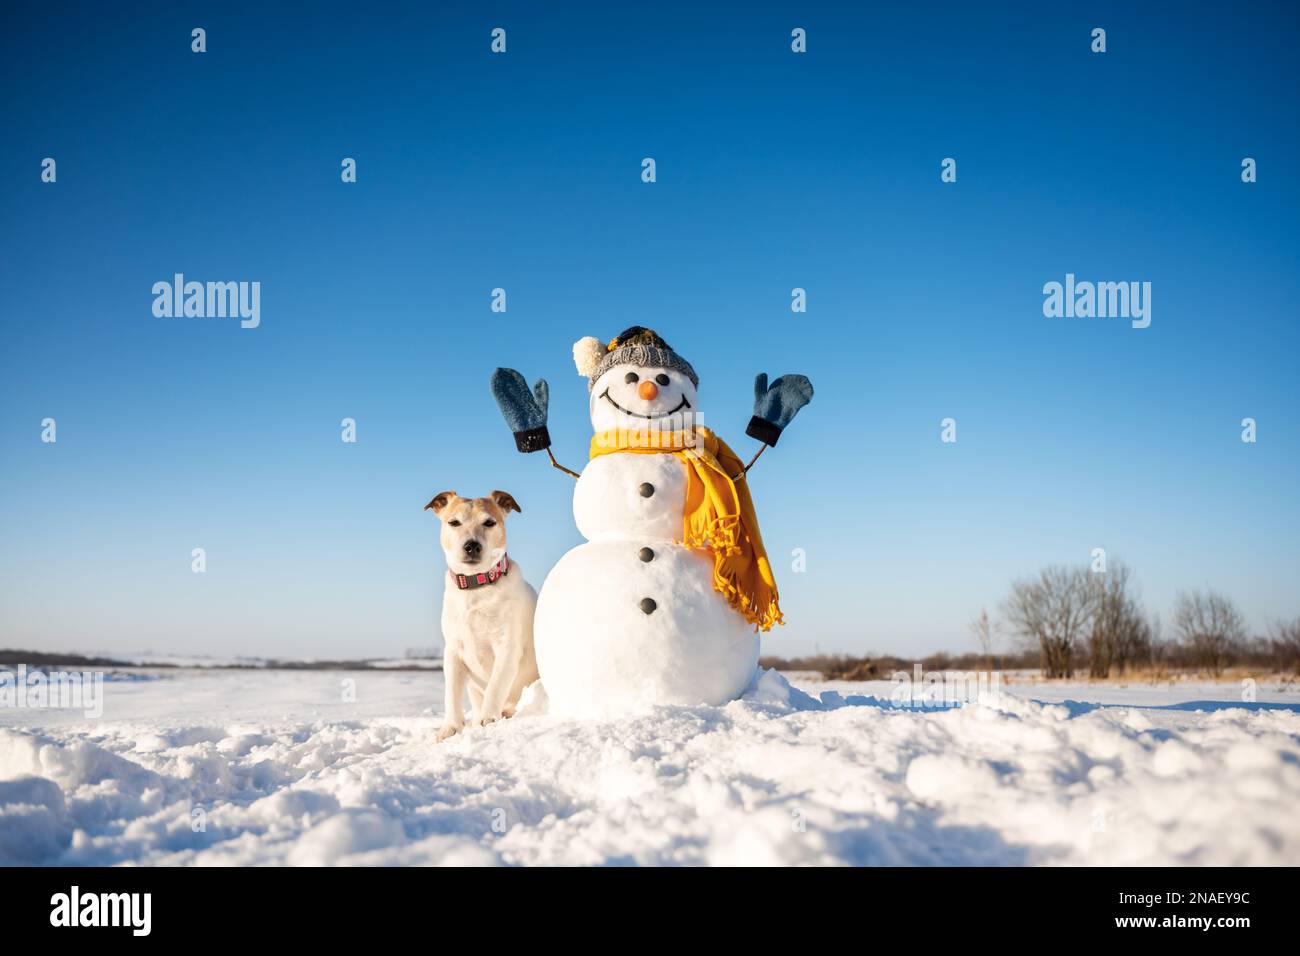 Simpatico pupazzo di neve in cappello lavorato a maglia e cuoio capelluto giallo con cagnolino russel terrier su campo innevato. Cielo blu sullo sfondo Foto Stock